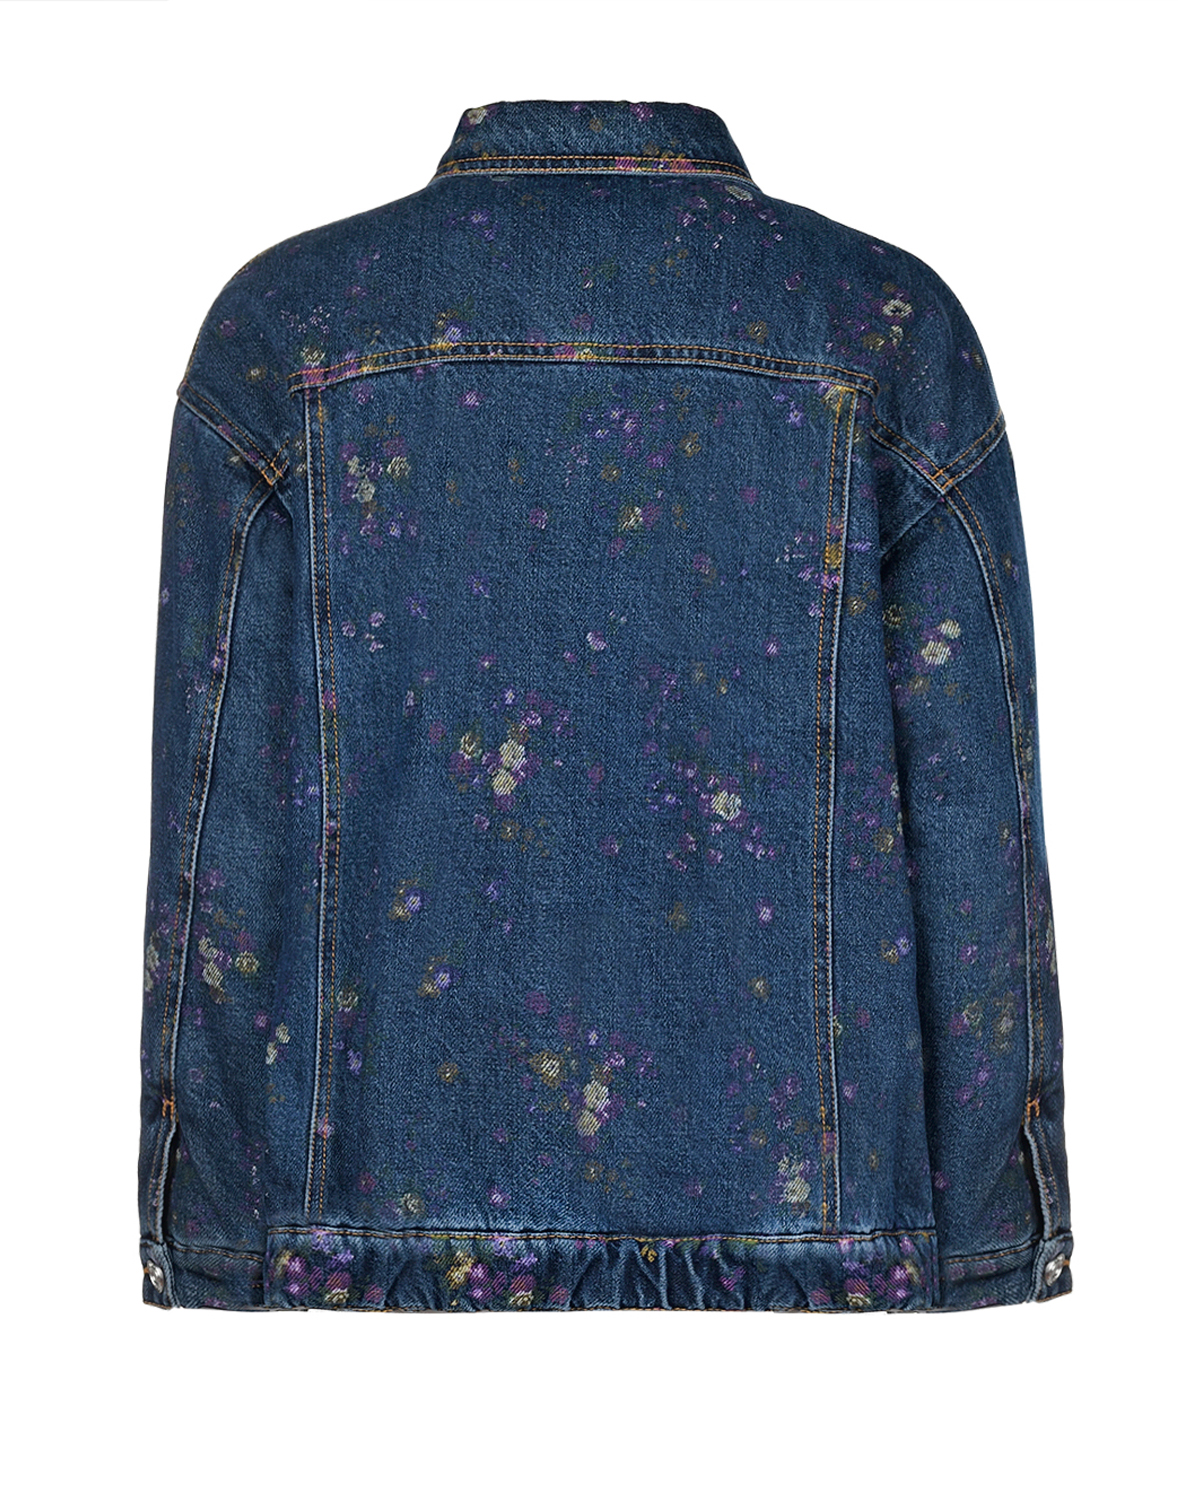 Синяя джинсовая куртка с цветочным принтом Philosophy di Lorenzo Serafini Kids детская, размер 152 - фото 2